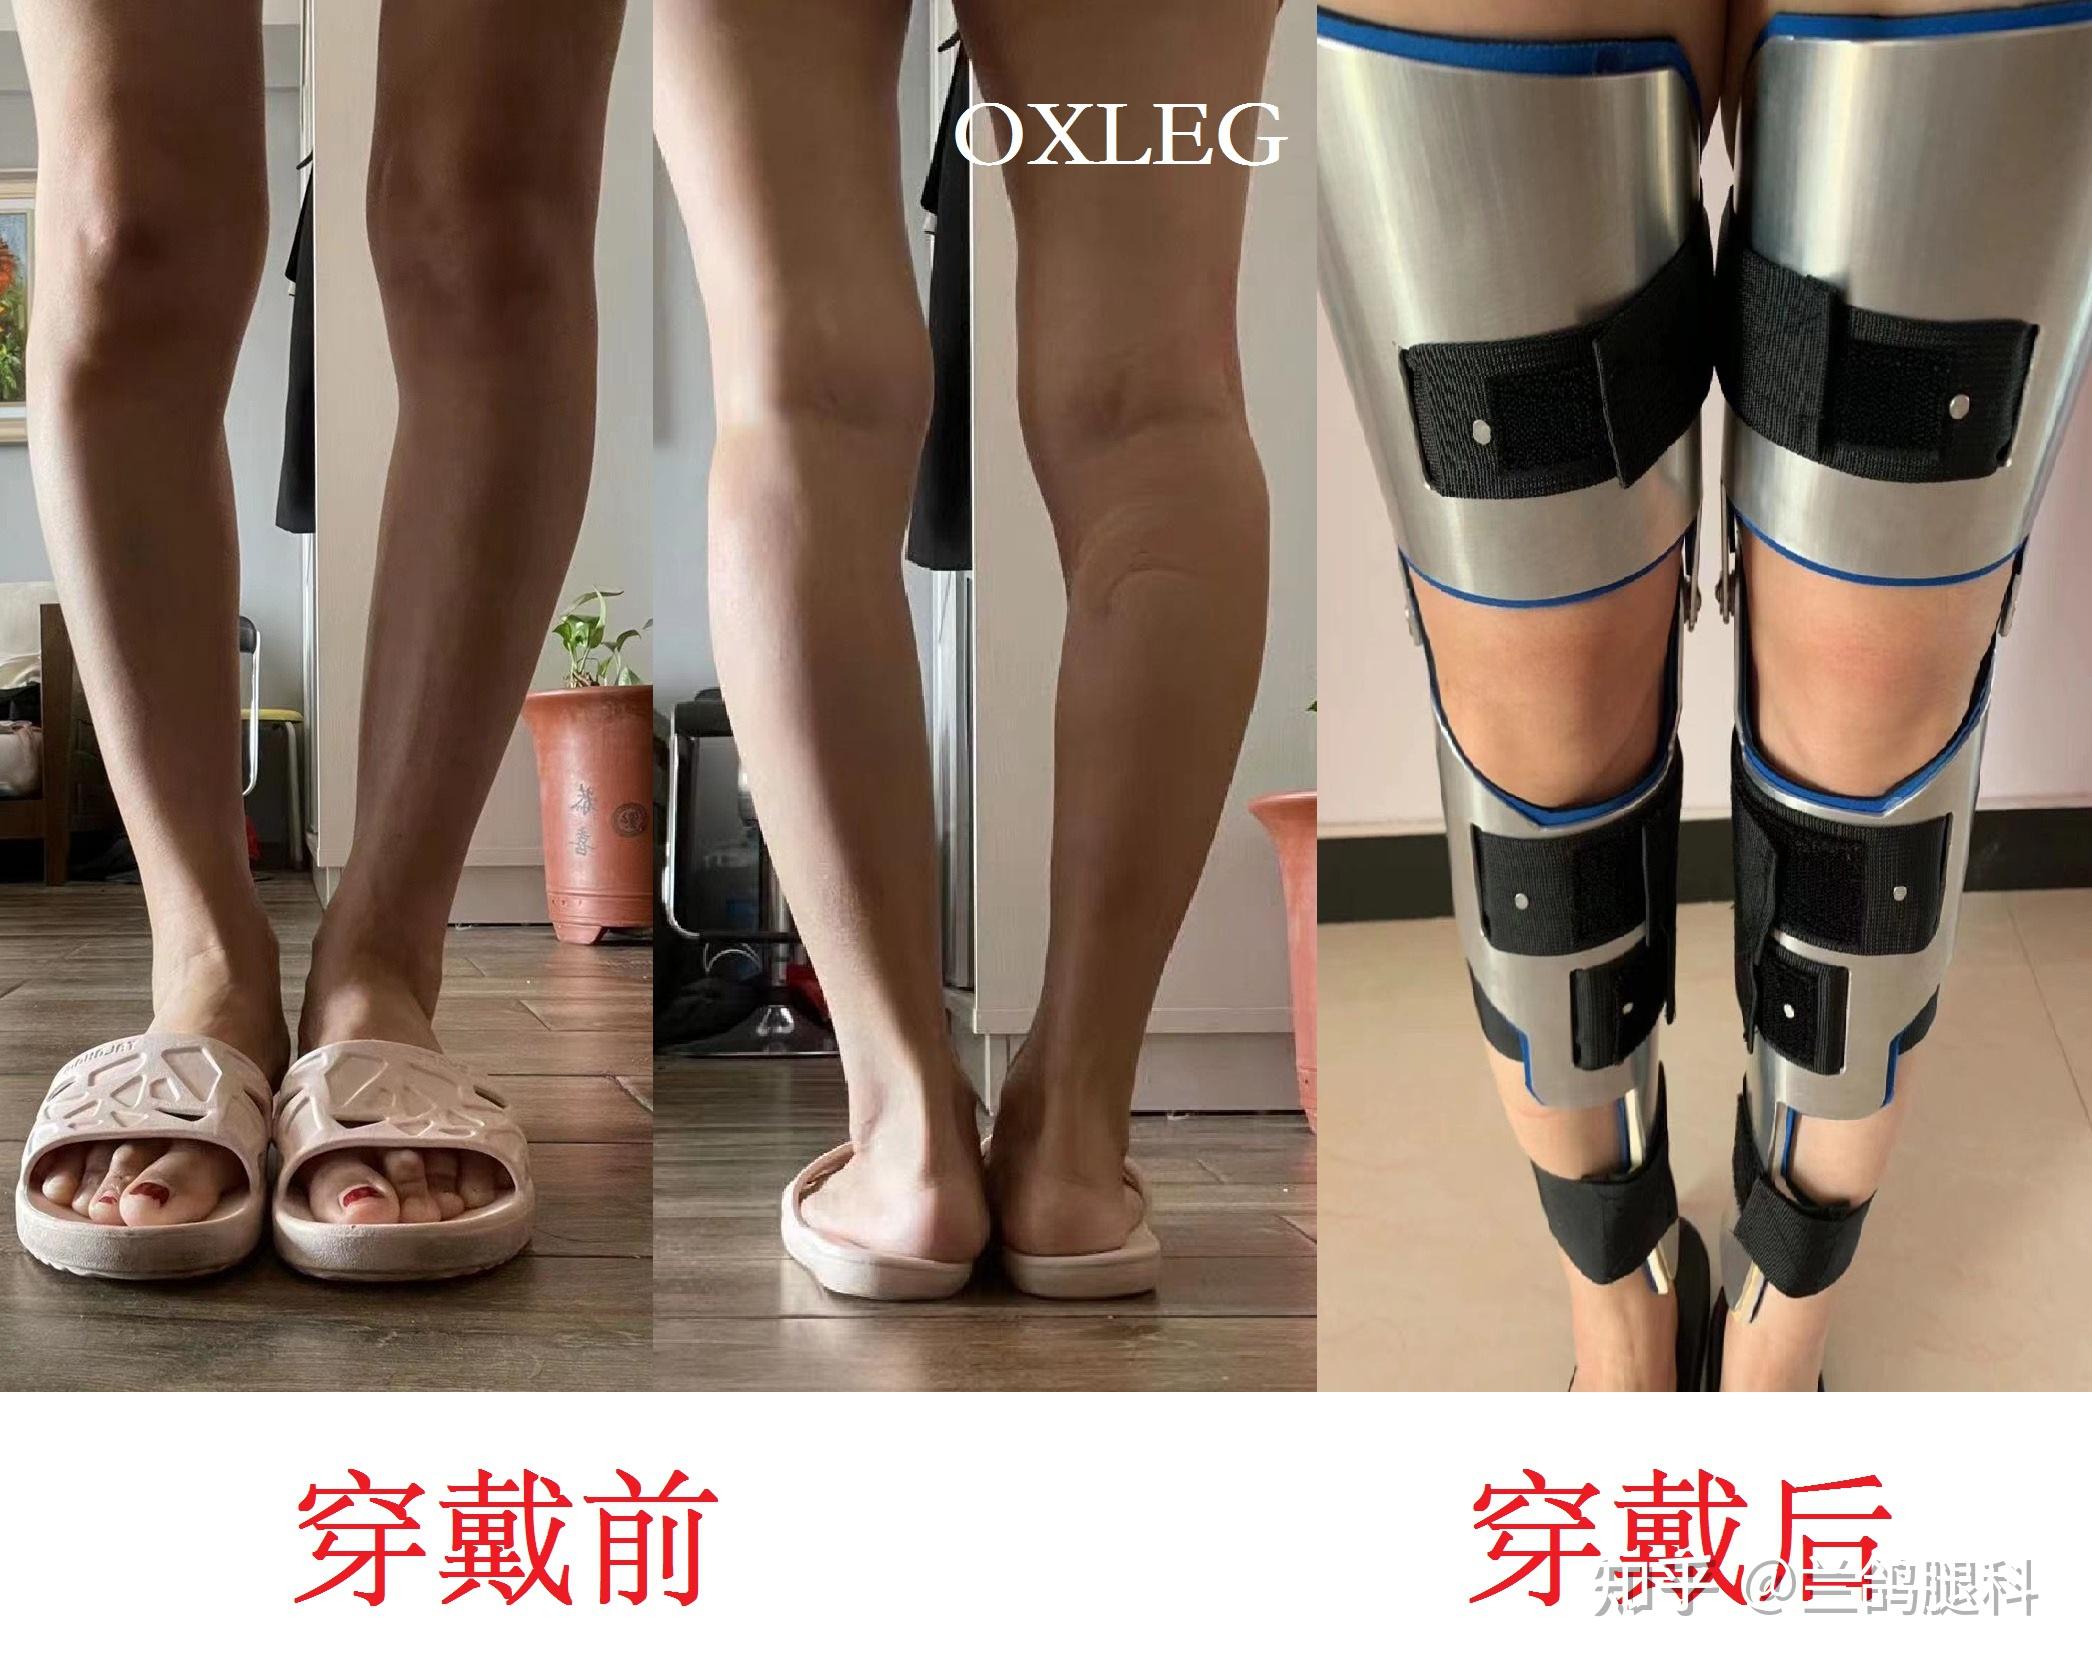 康复医学科丨还我一双美腿——综合消肿疗法的开展 - 科室新闻 - 欢迎光临安徽省第二人民医院